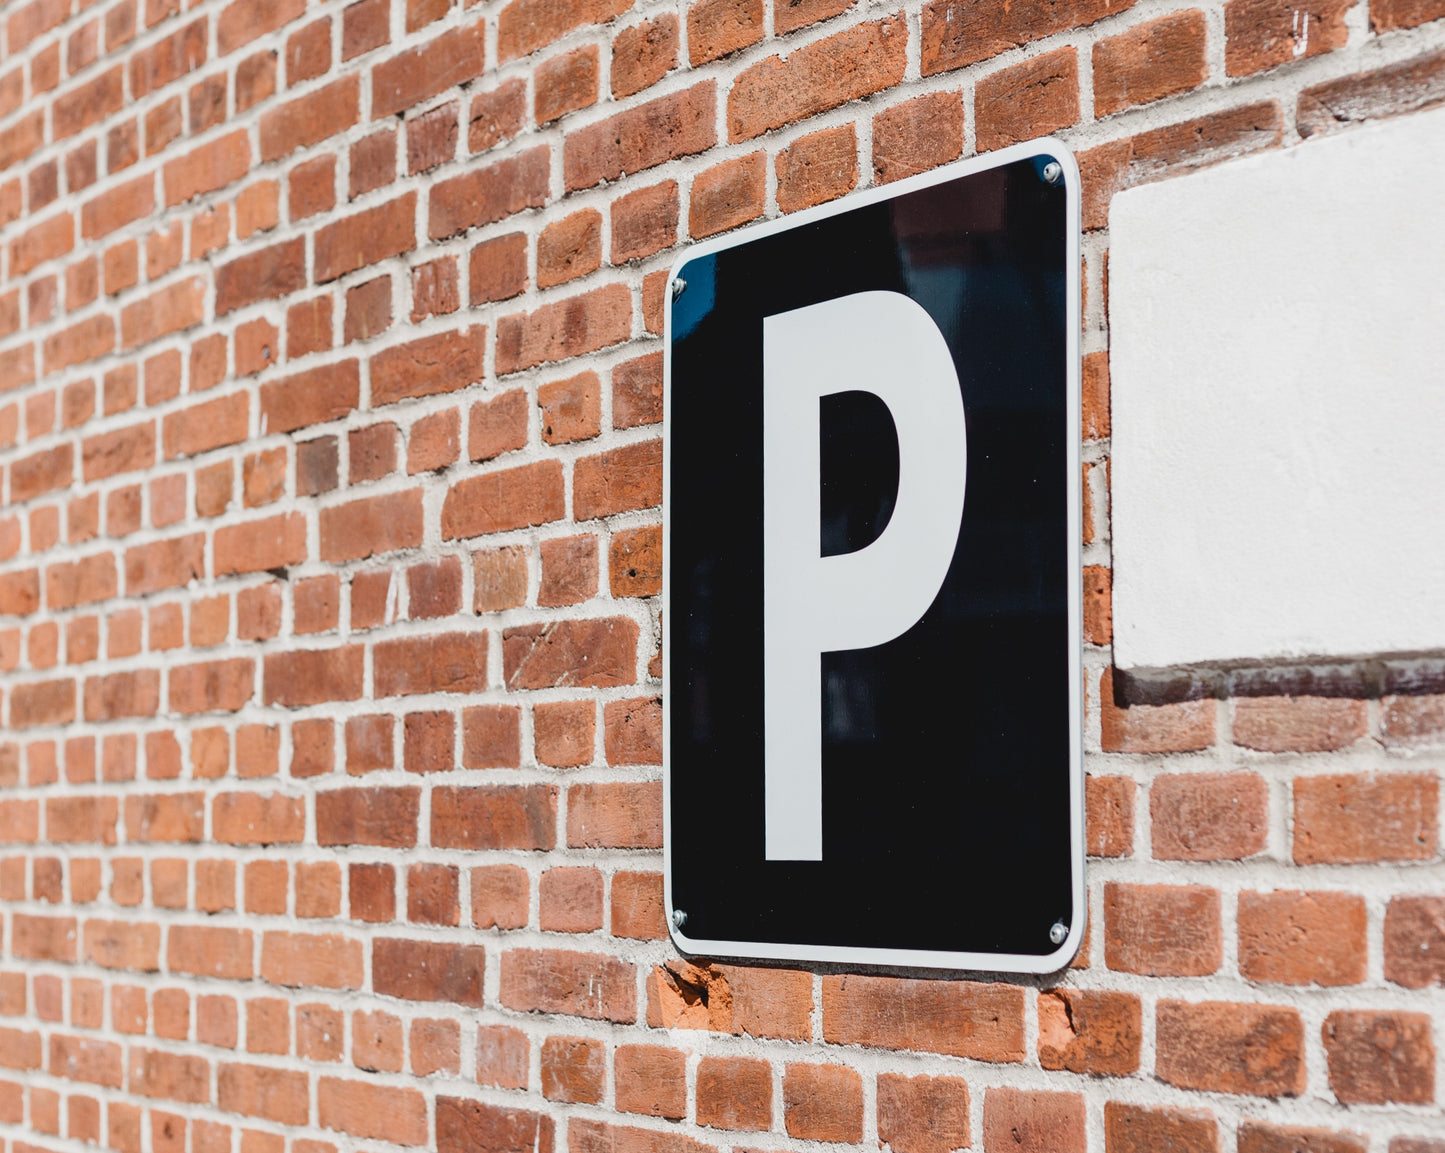 Parking Sign